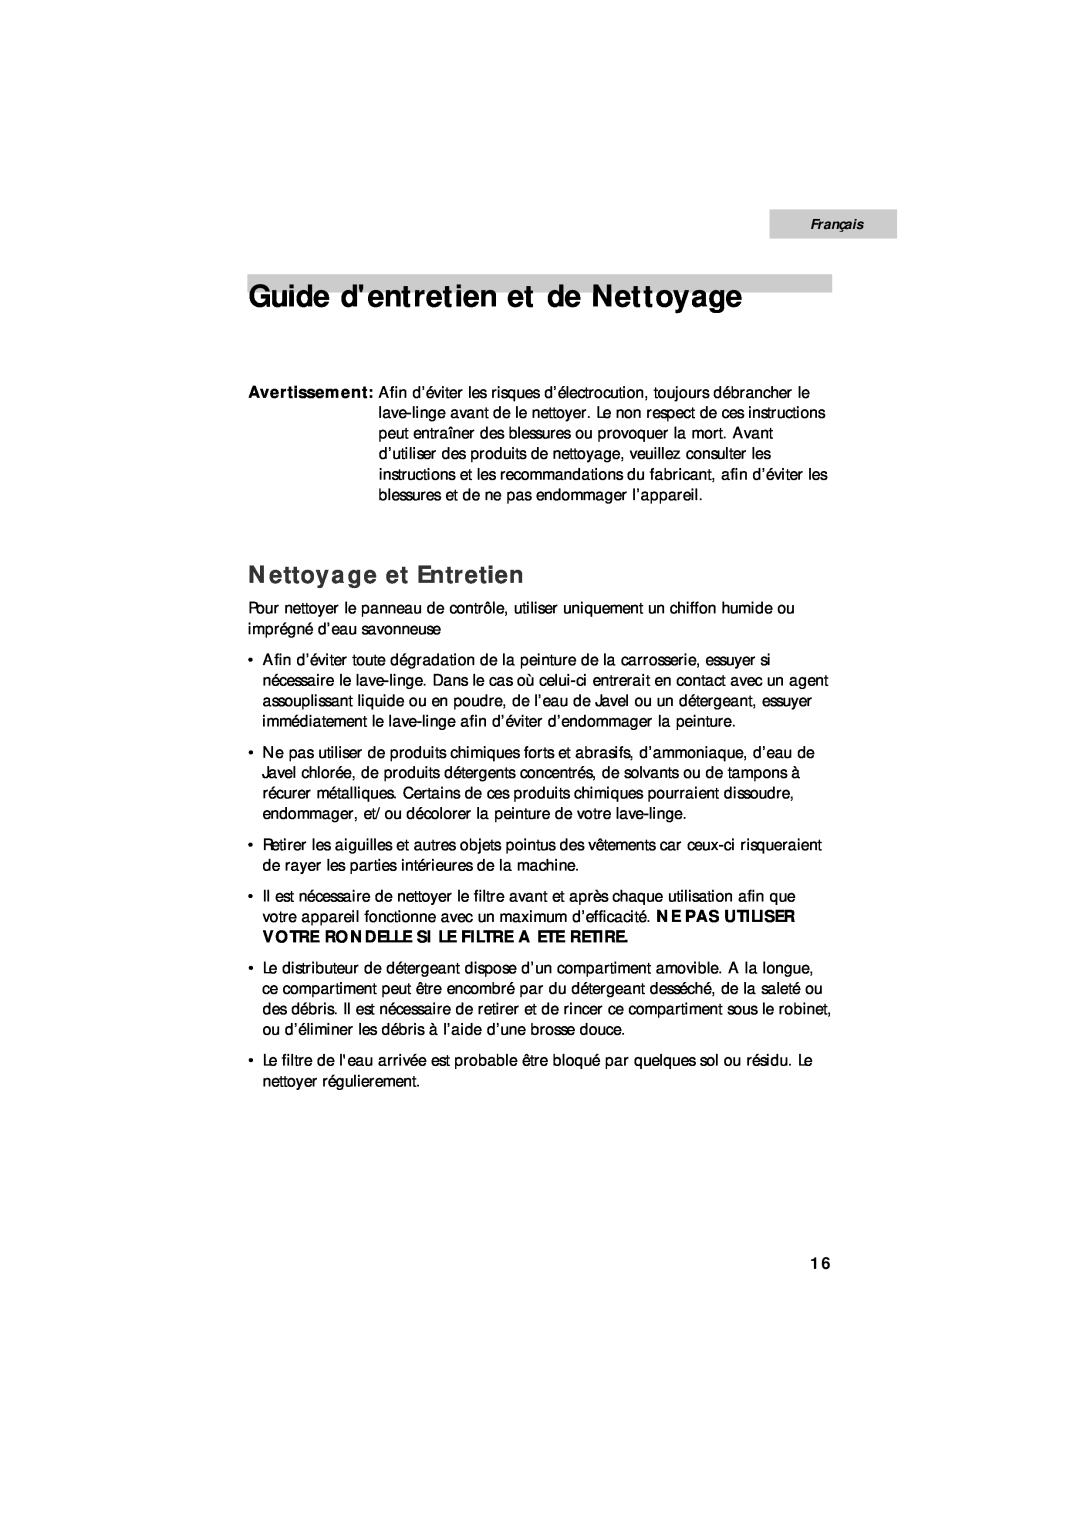 Summit SPW1200P user manual Guide dentretien et de Nettoyage, Nettoyage et Entretien, Français 